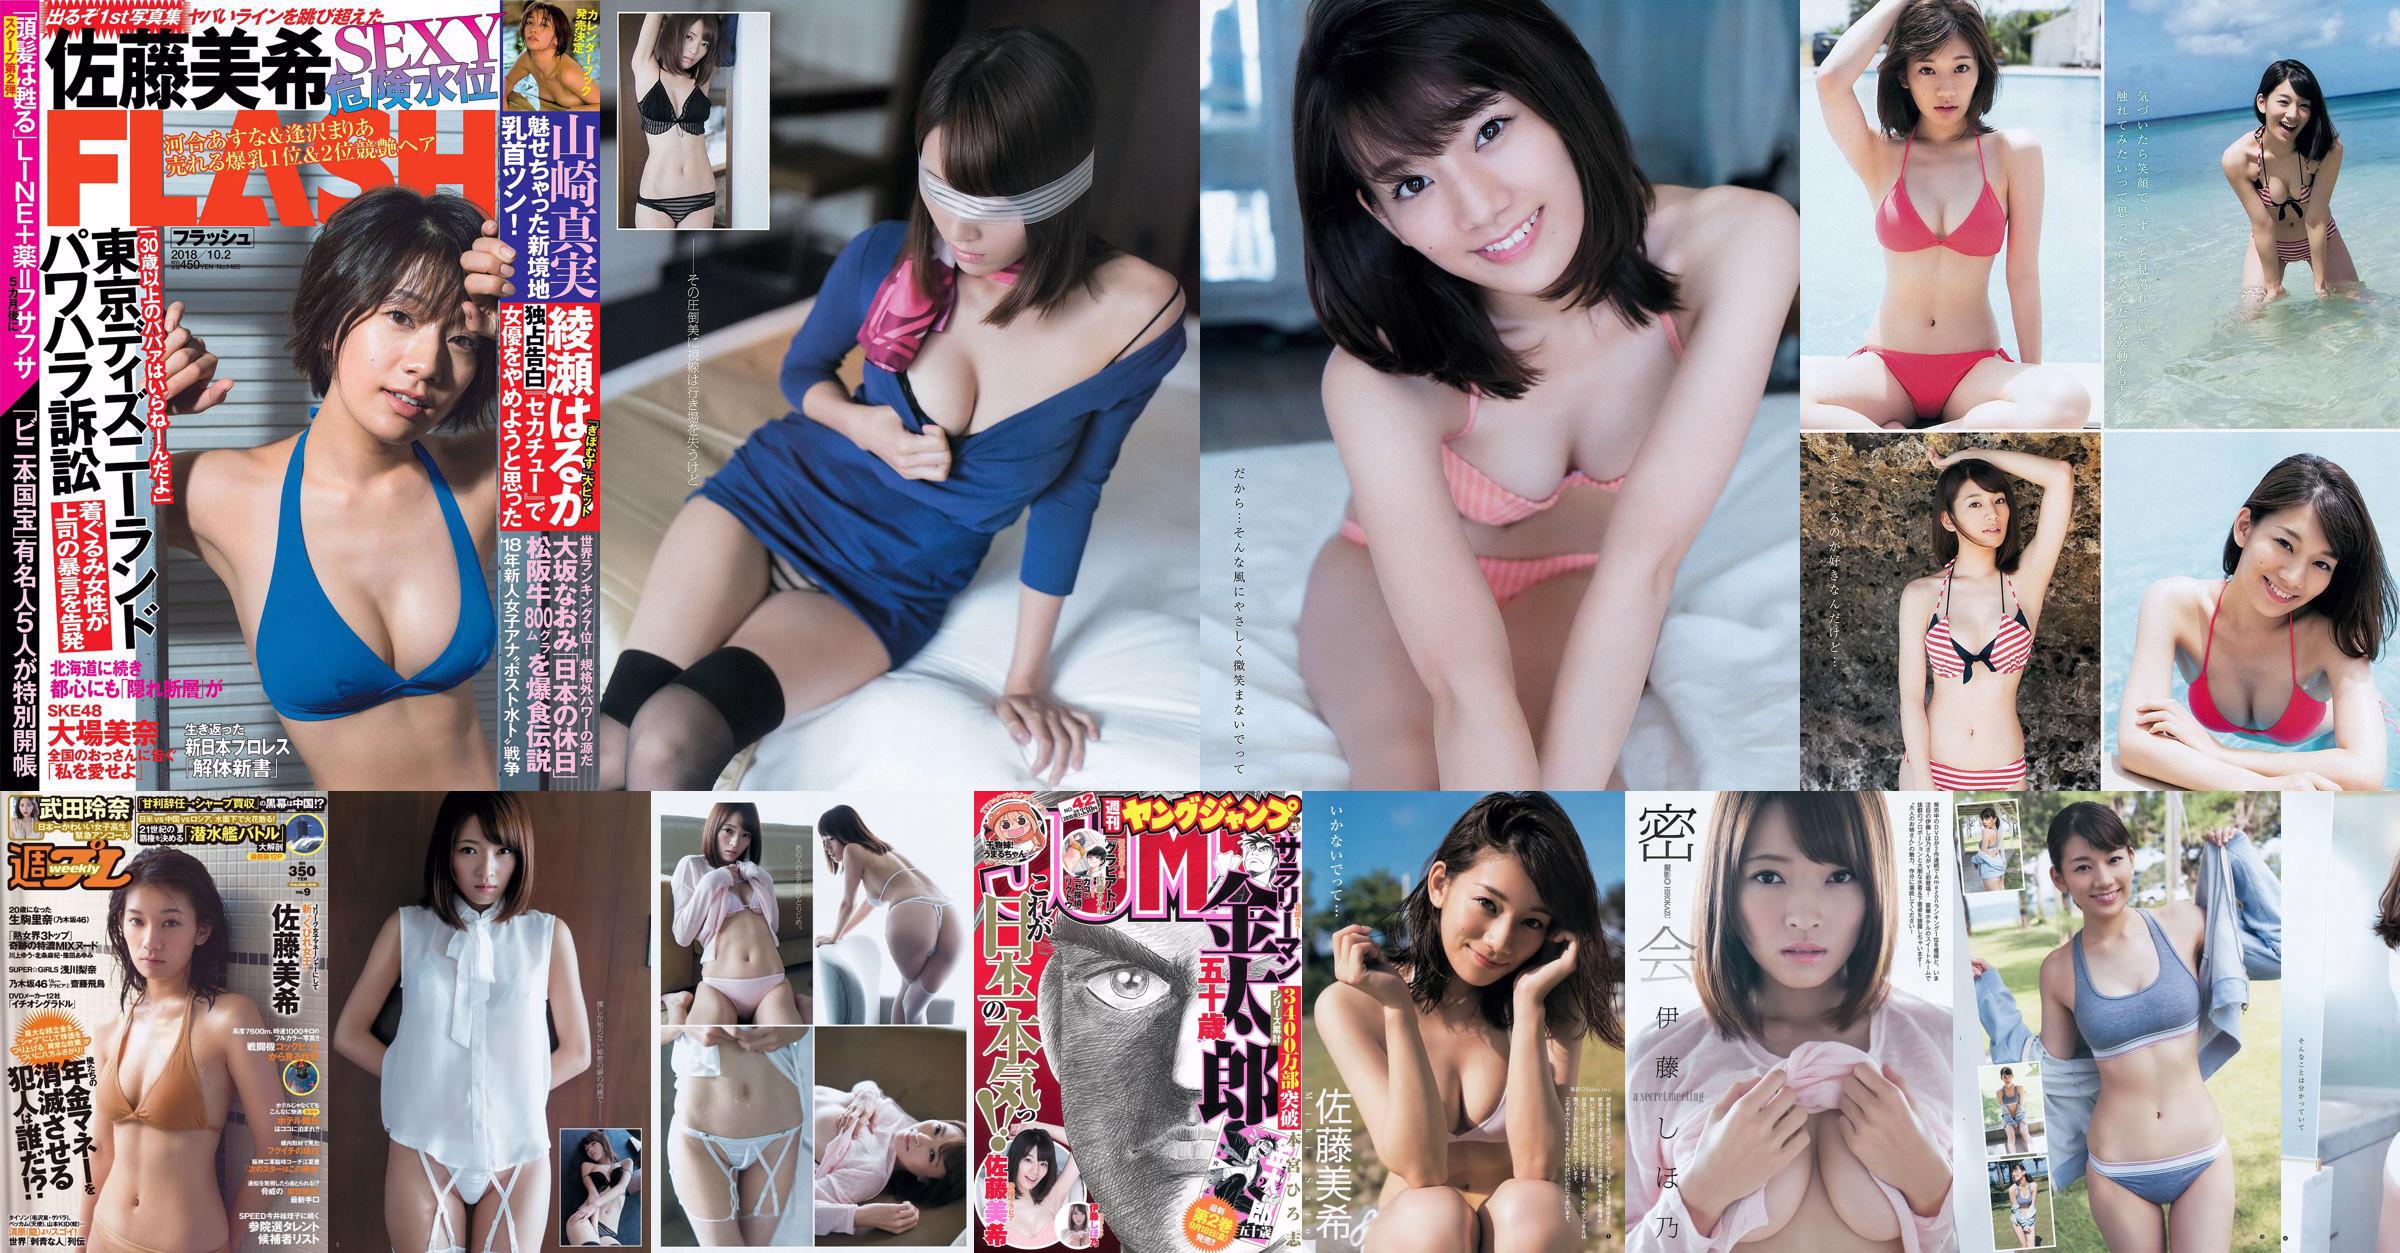 Sato Maki Ito Kayano [Weekly Young Jump] Magazine photo n ° 42 2015 No.b4f6be Page 6